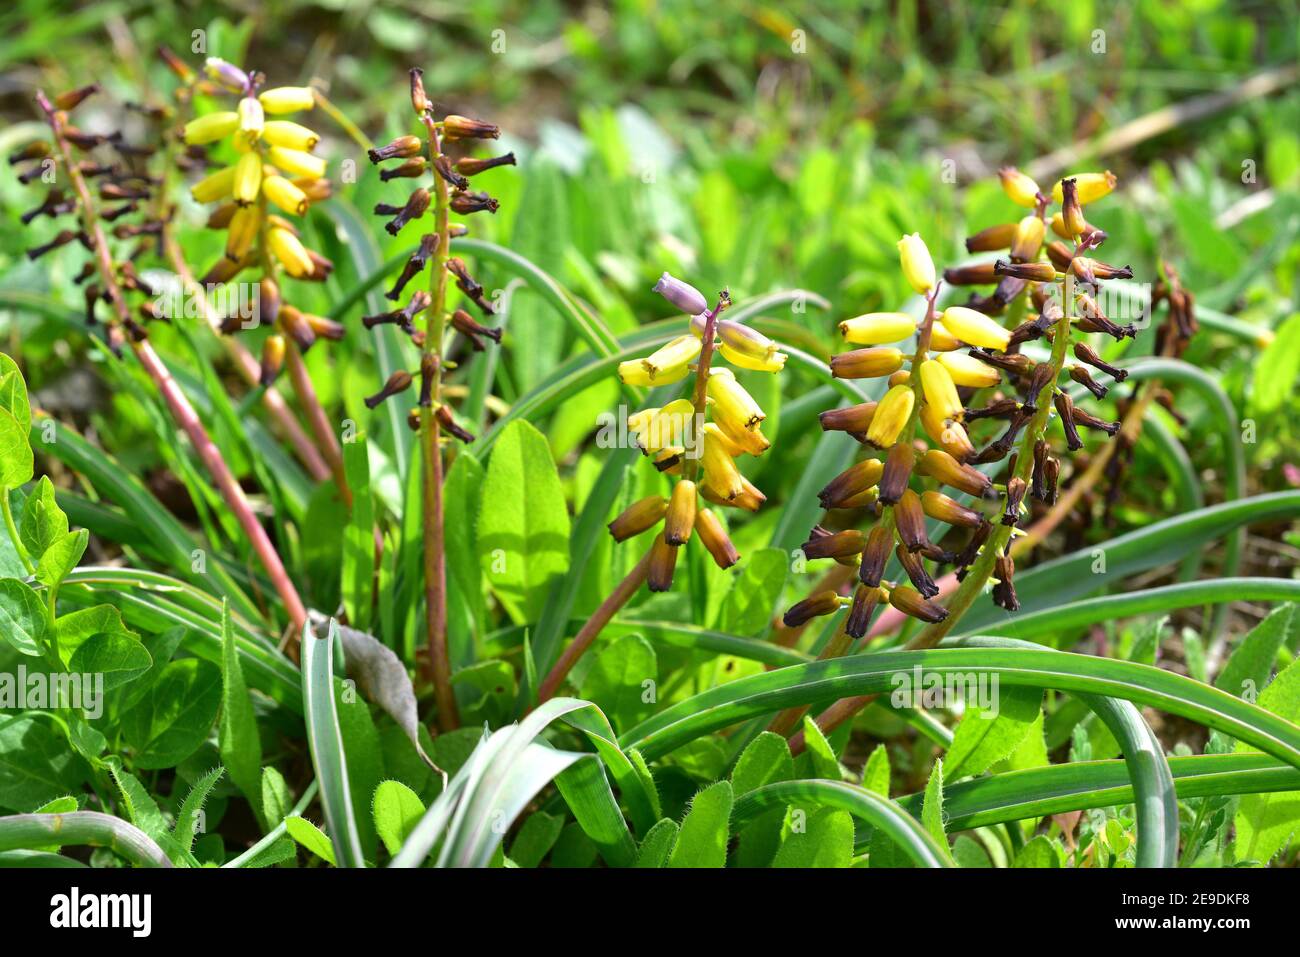 El jacinto de uva (Muscari macrocarpum) es una hierba perenne nativa de Creta (Grecia) y Turquía. Planta floreciente. Foto de stock